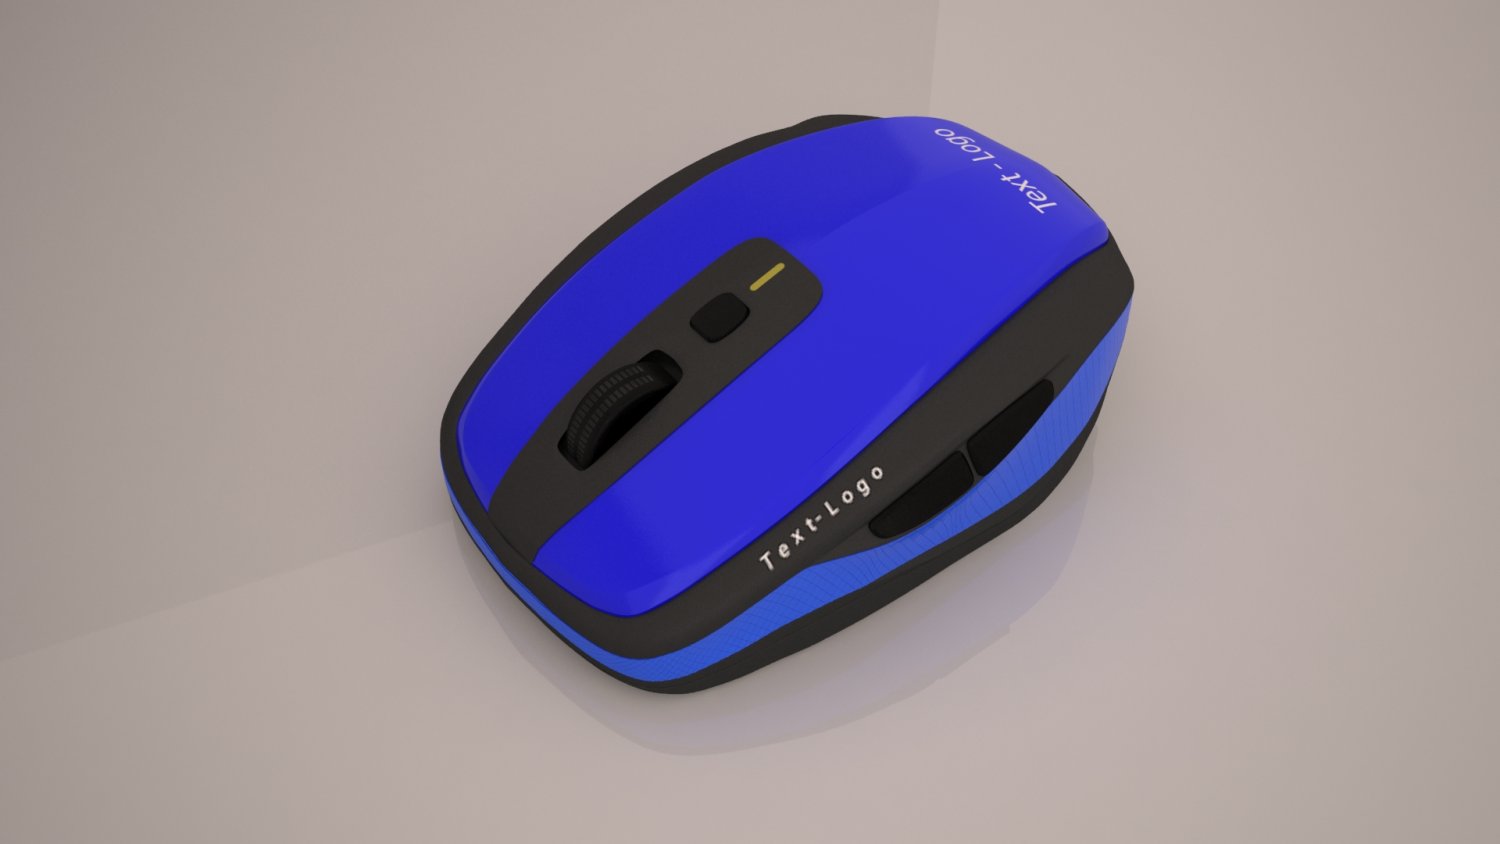 3d mouse. Mouse:dm210. VR Mouse. Mouse SW-m715gw 3d model. NDOF device also known as 3d Mouse.